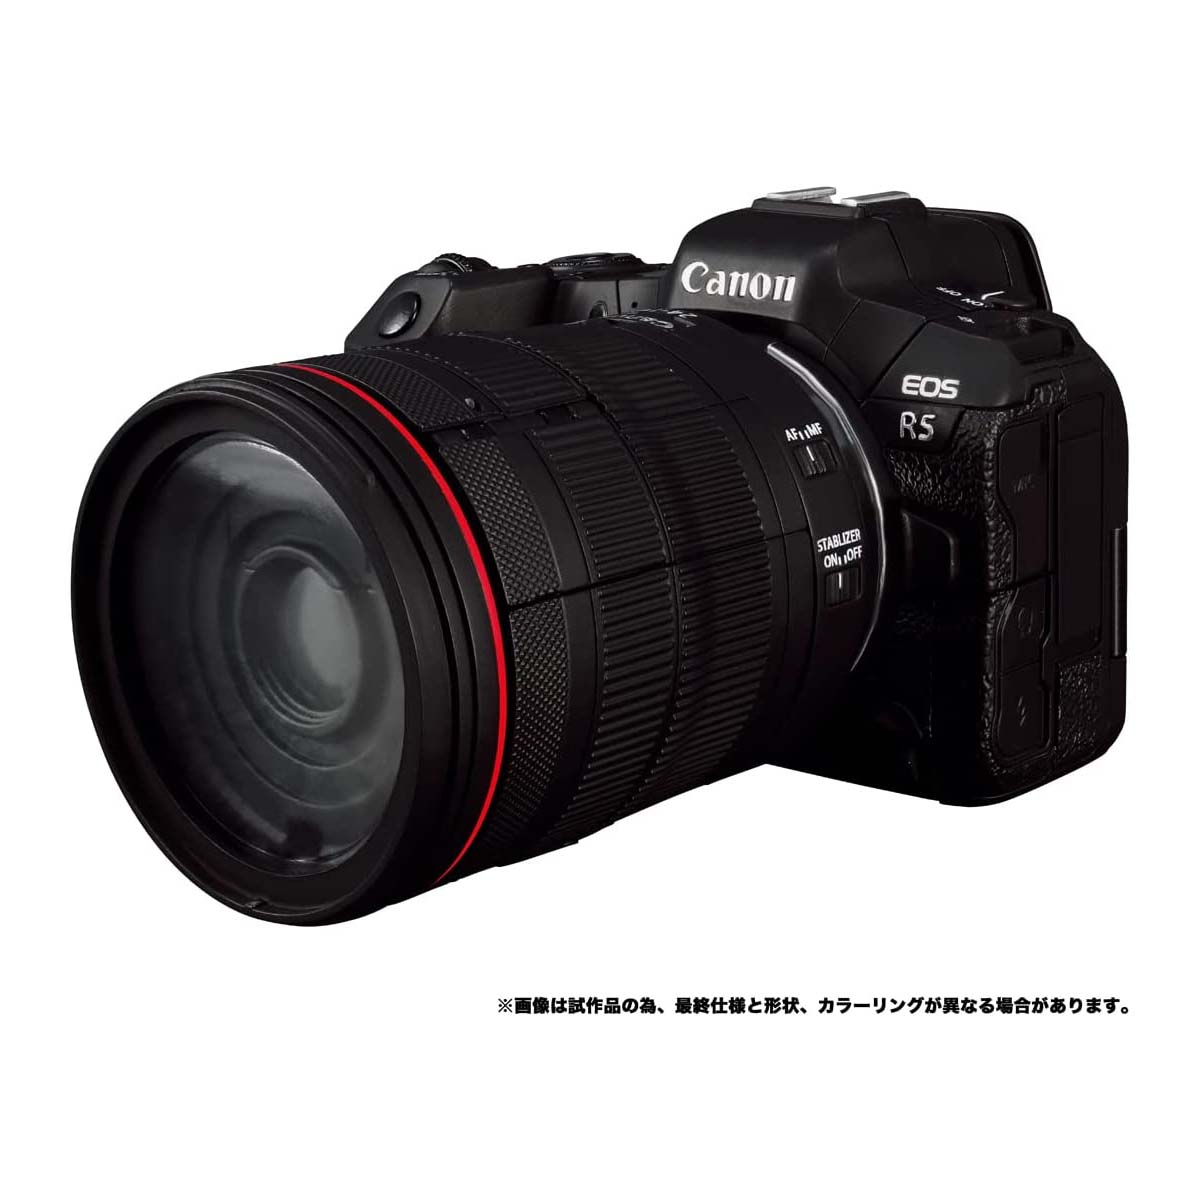 トランスフォーマー『Canon/TRANSFORMERS オプティマスプライムR5』可変可動フィギュア-002